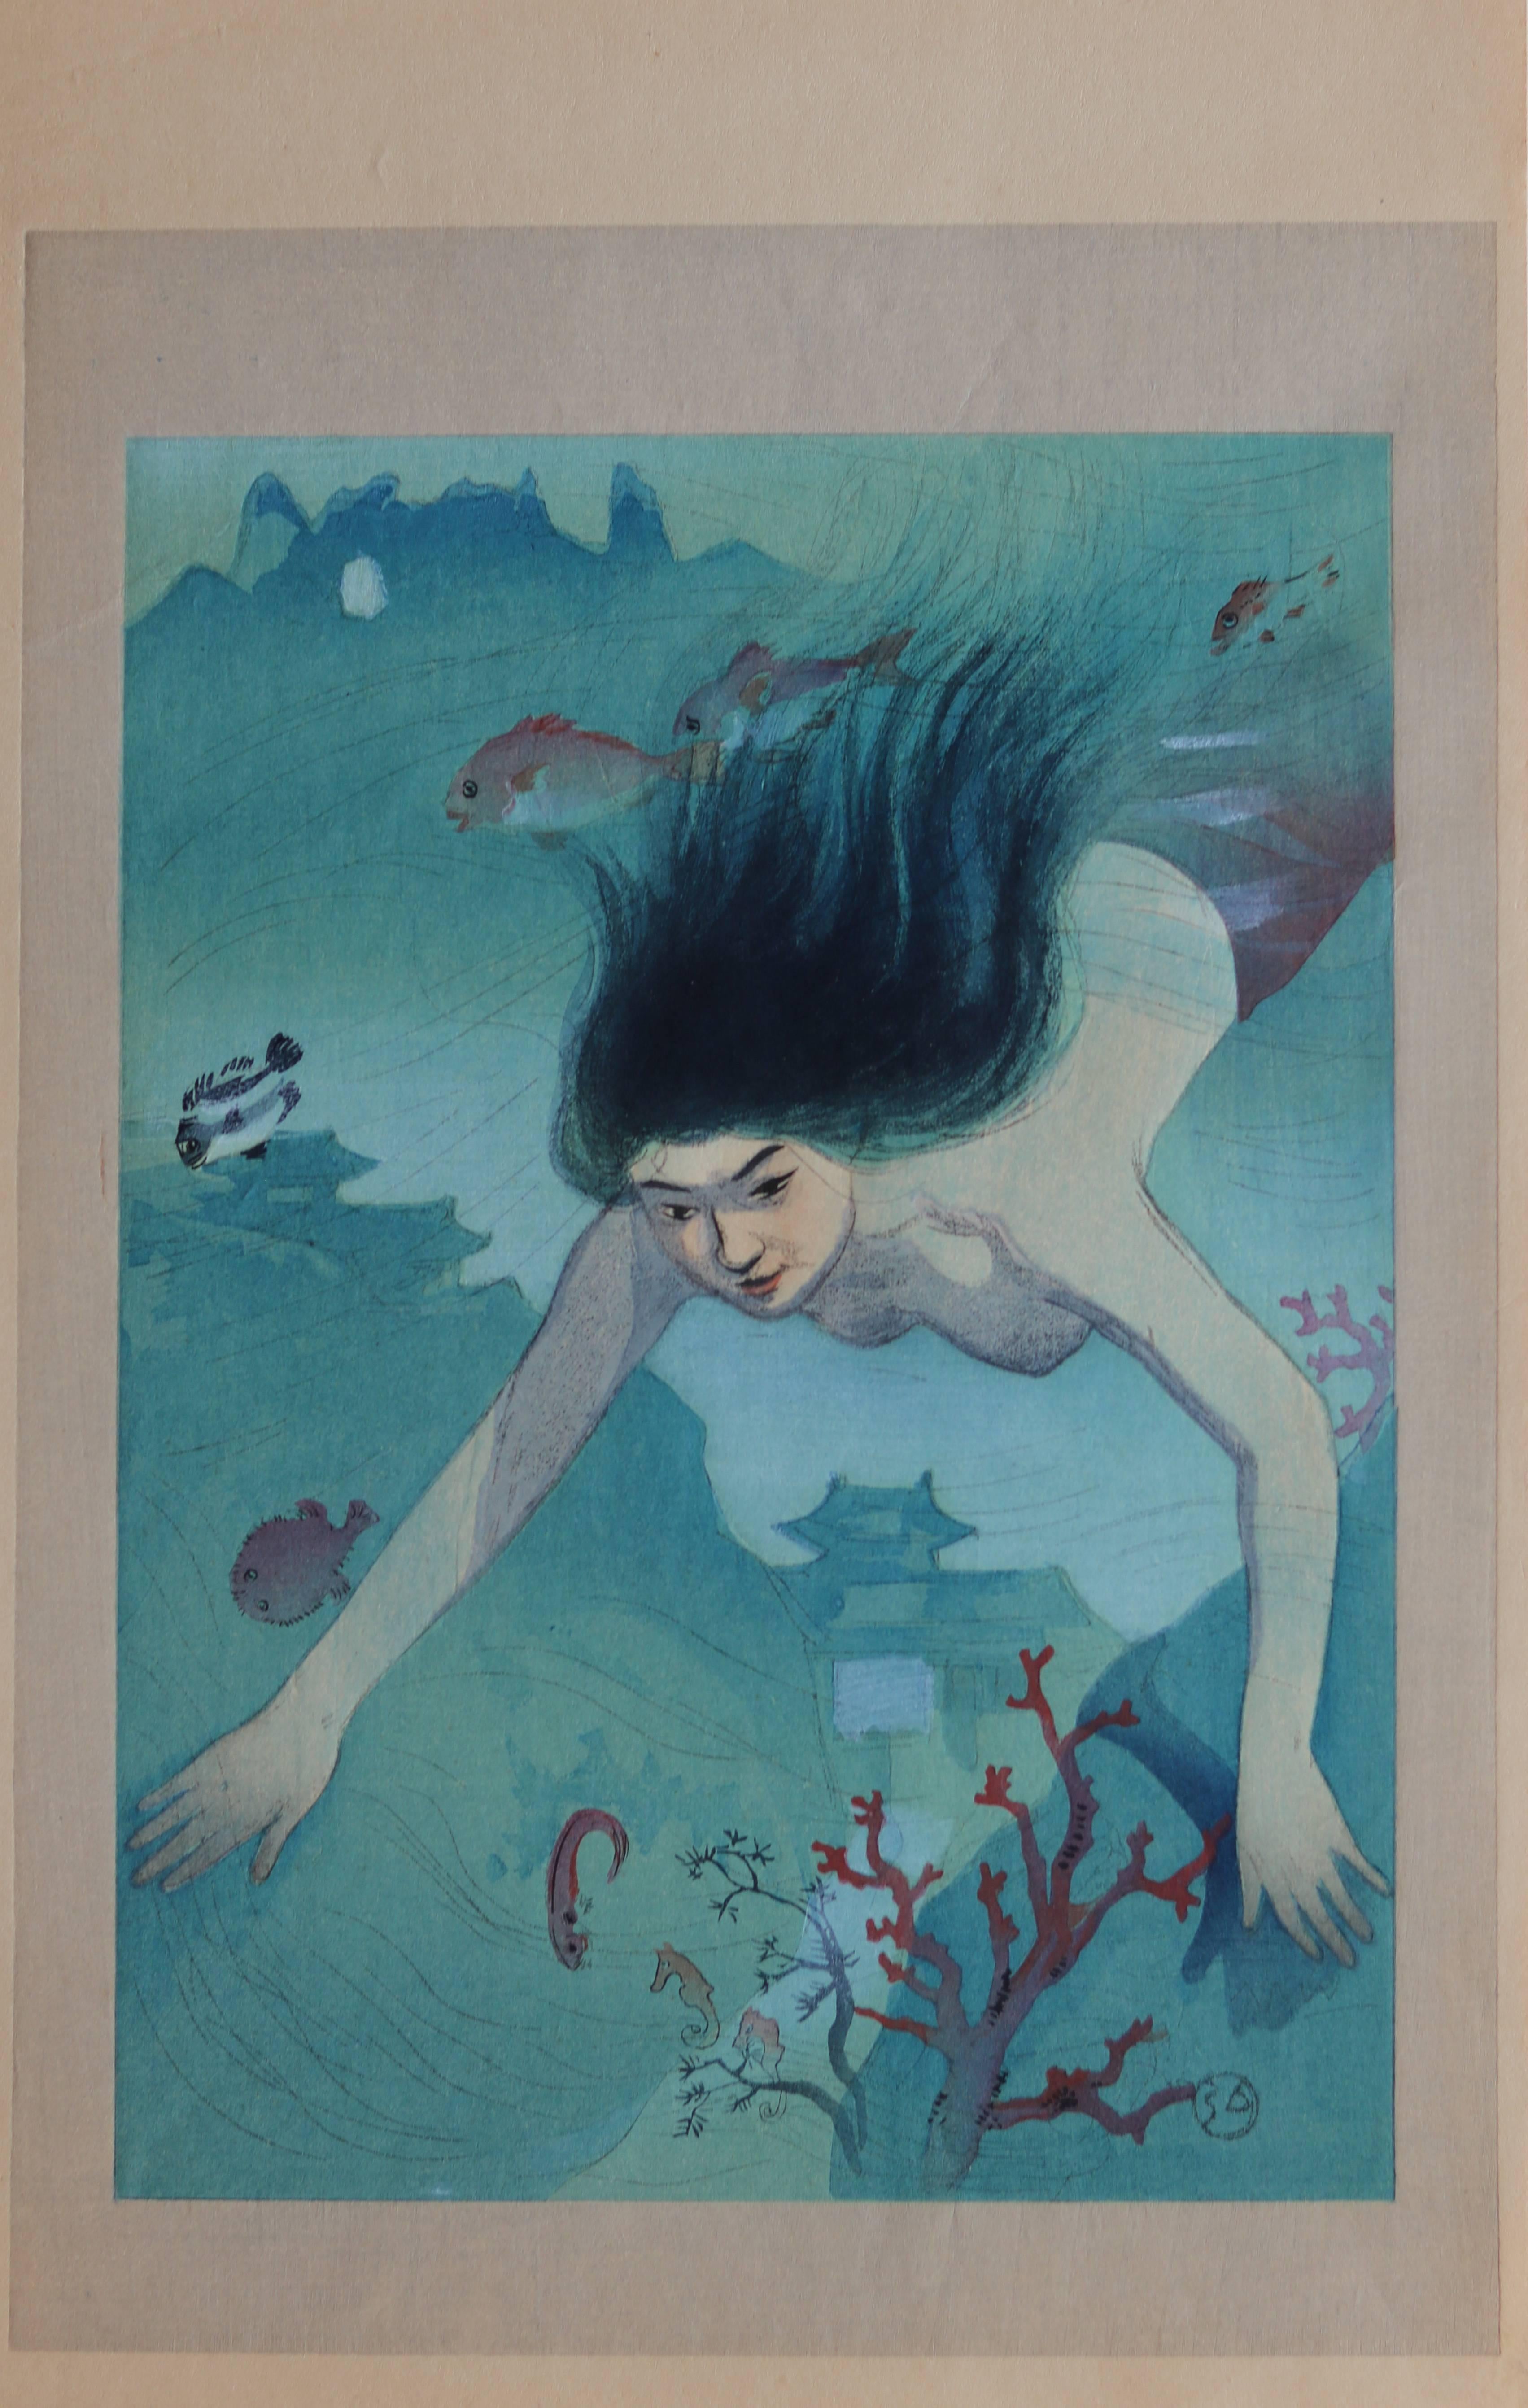 Beauty Diving Underwater - Print by Nakazawa Hiromitsu